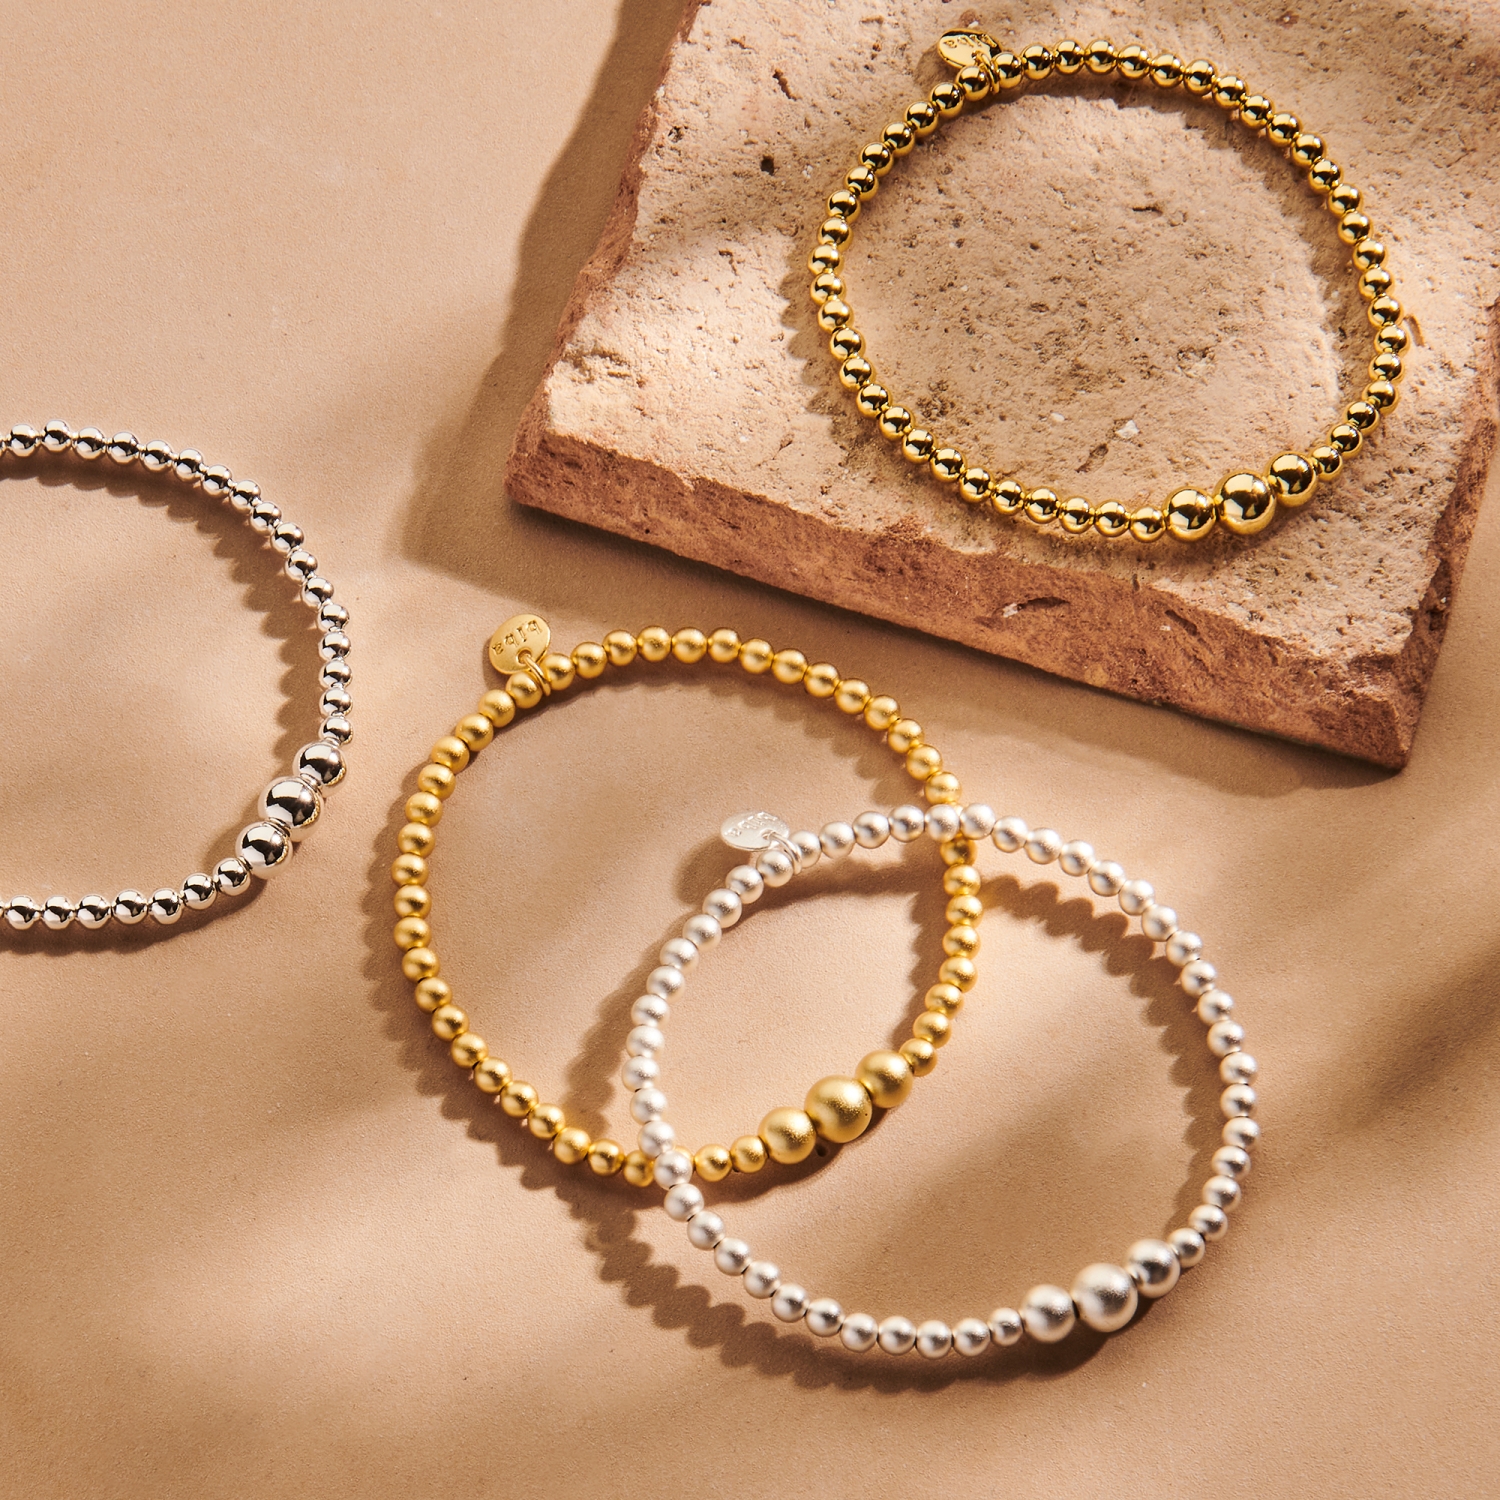 Biba Perlen-Armband aus Metall goldfarben matt